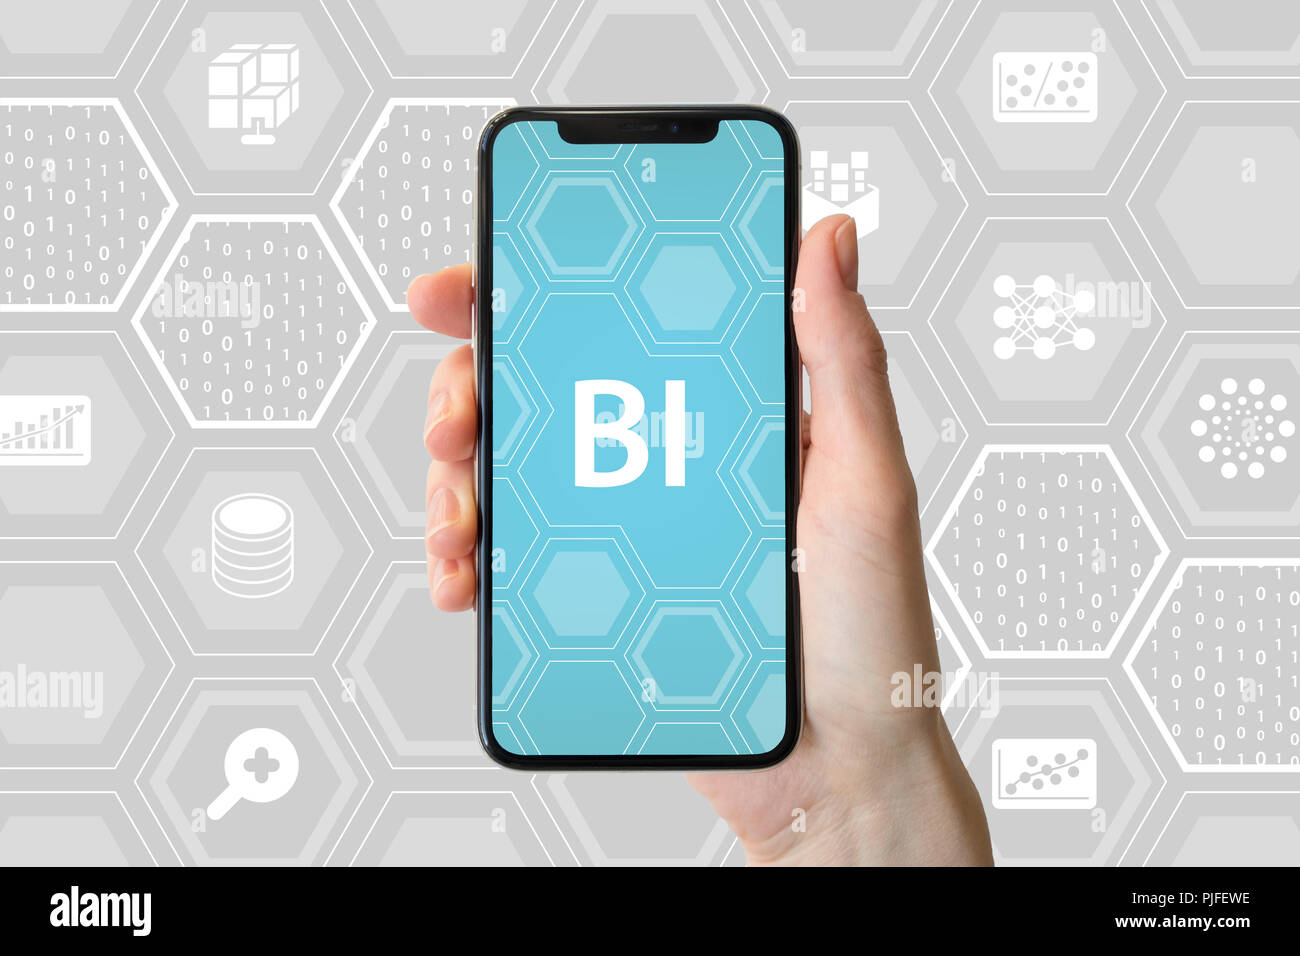 Concept de Business Intelligence. Hand holding smartphone moderne en face de fond neutre avec des icônes. Banque D'Images